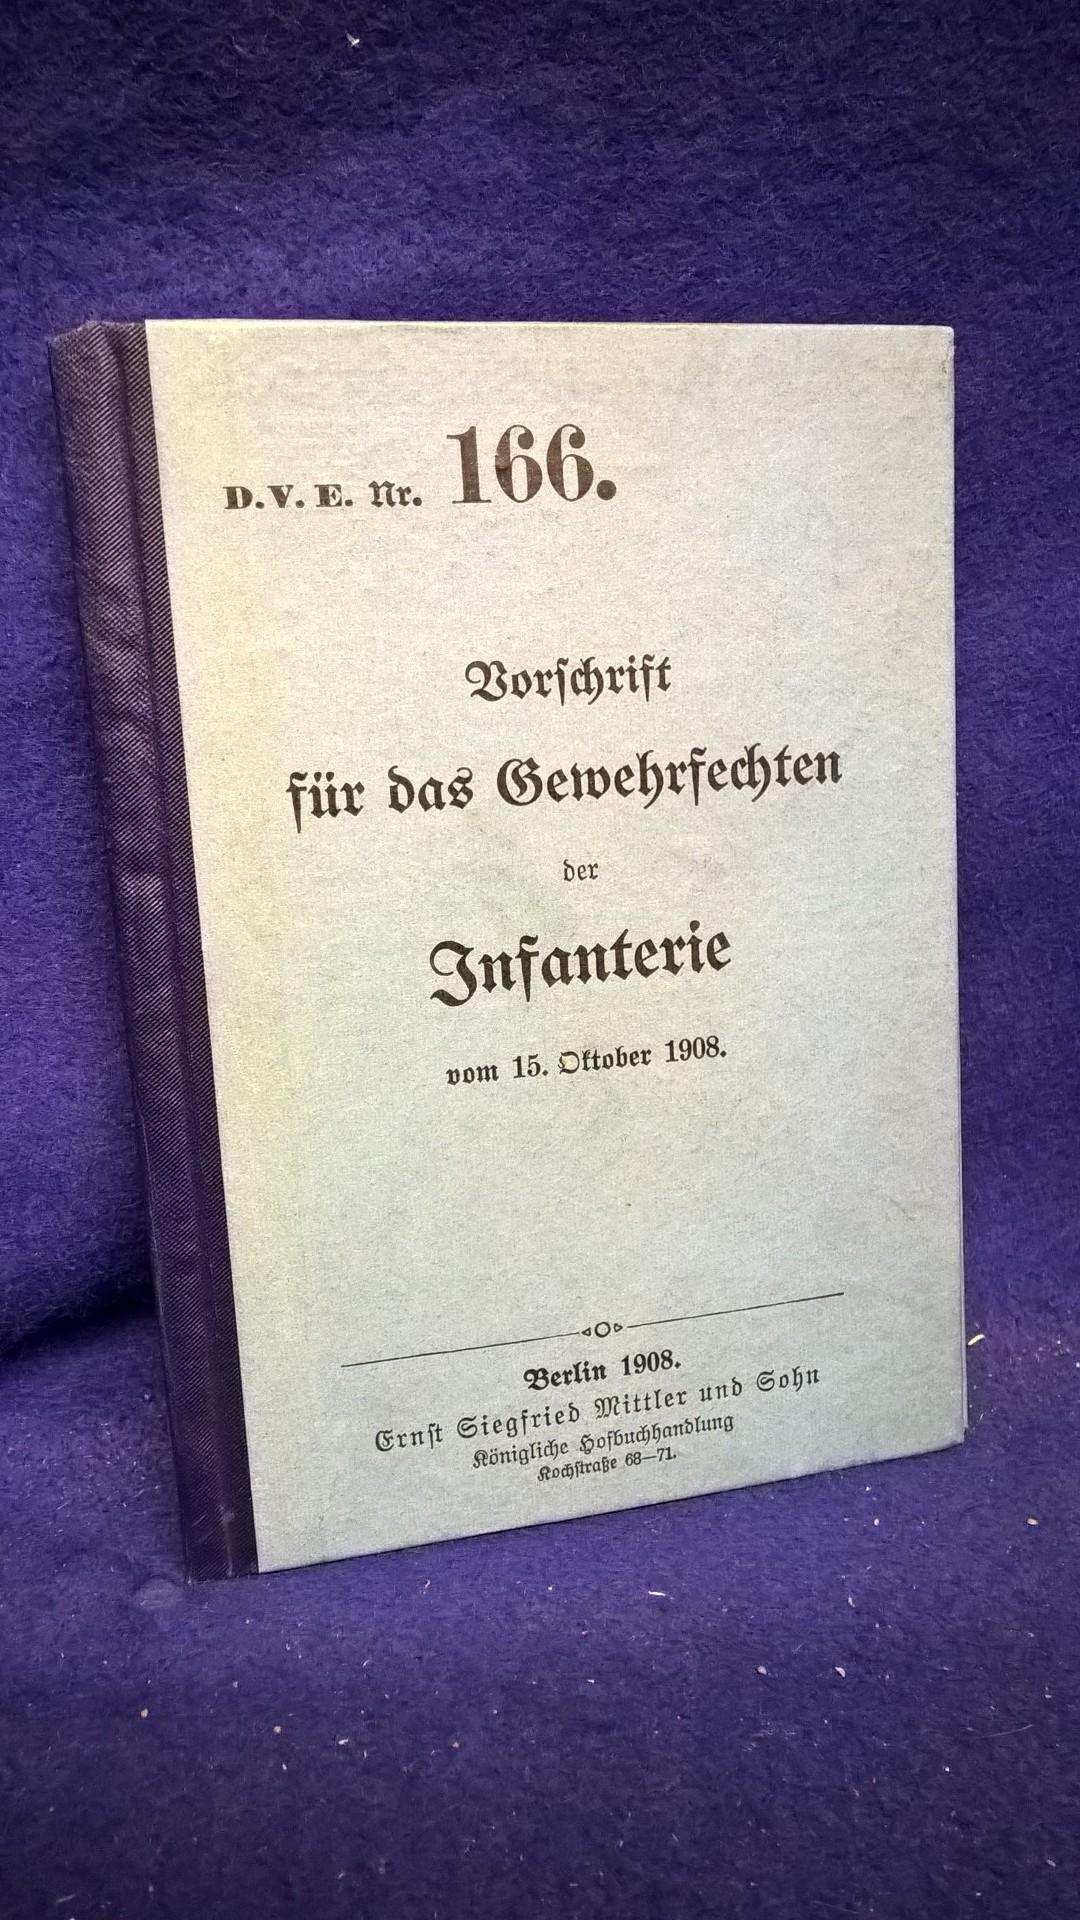 D.V.E.Nr. 166. Vorschrift für das Gewehrfechten der Infanterie,1908.